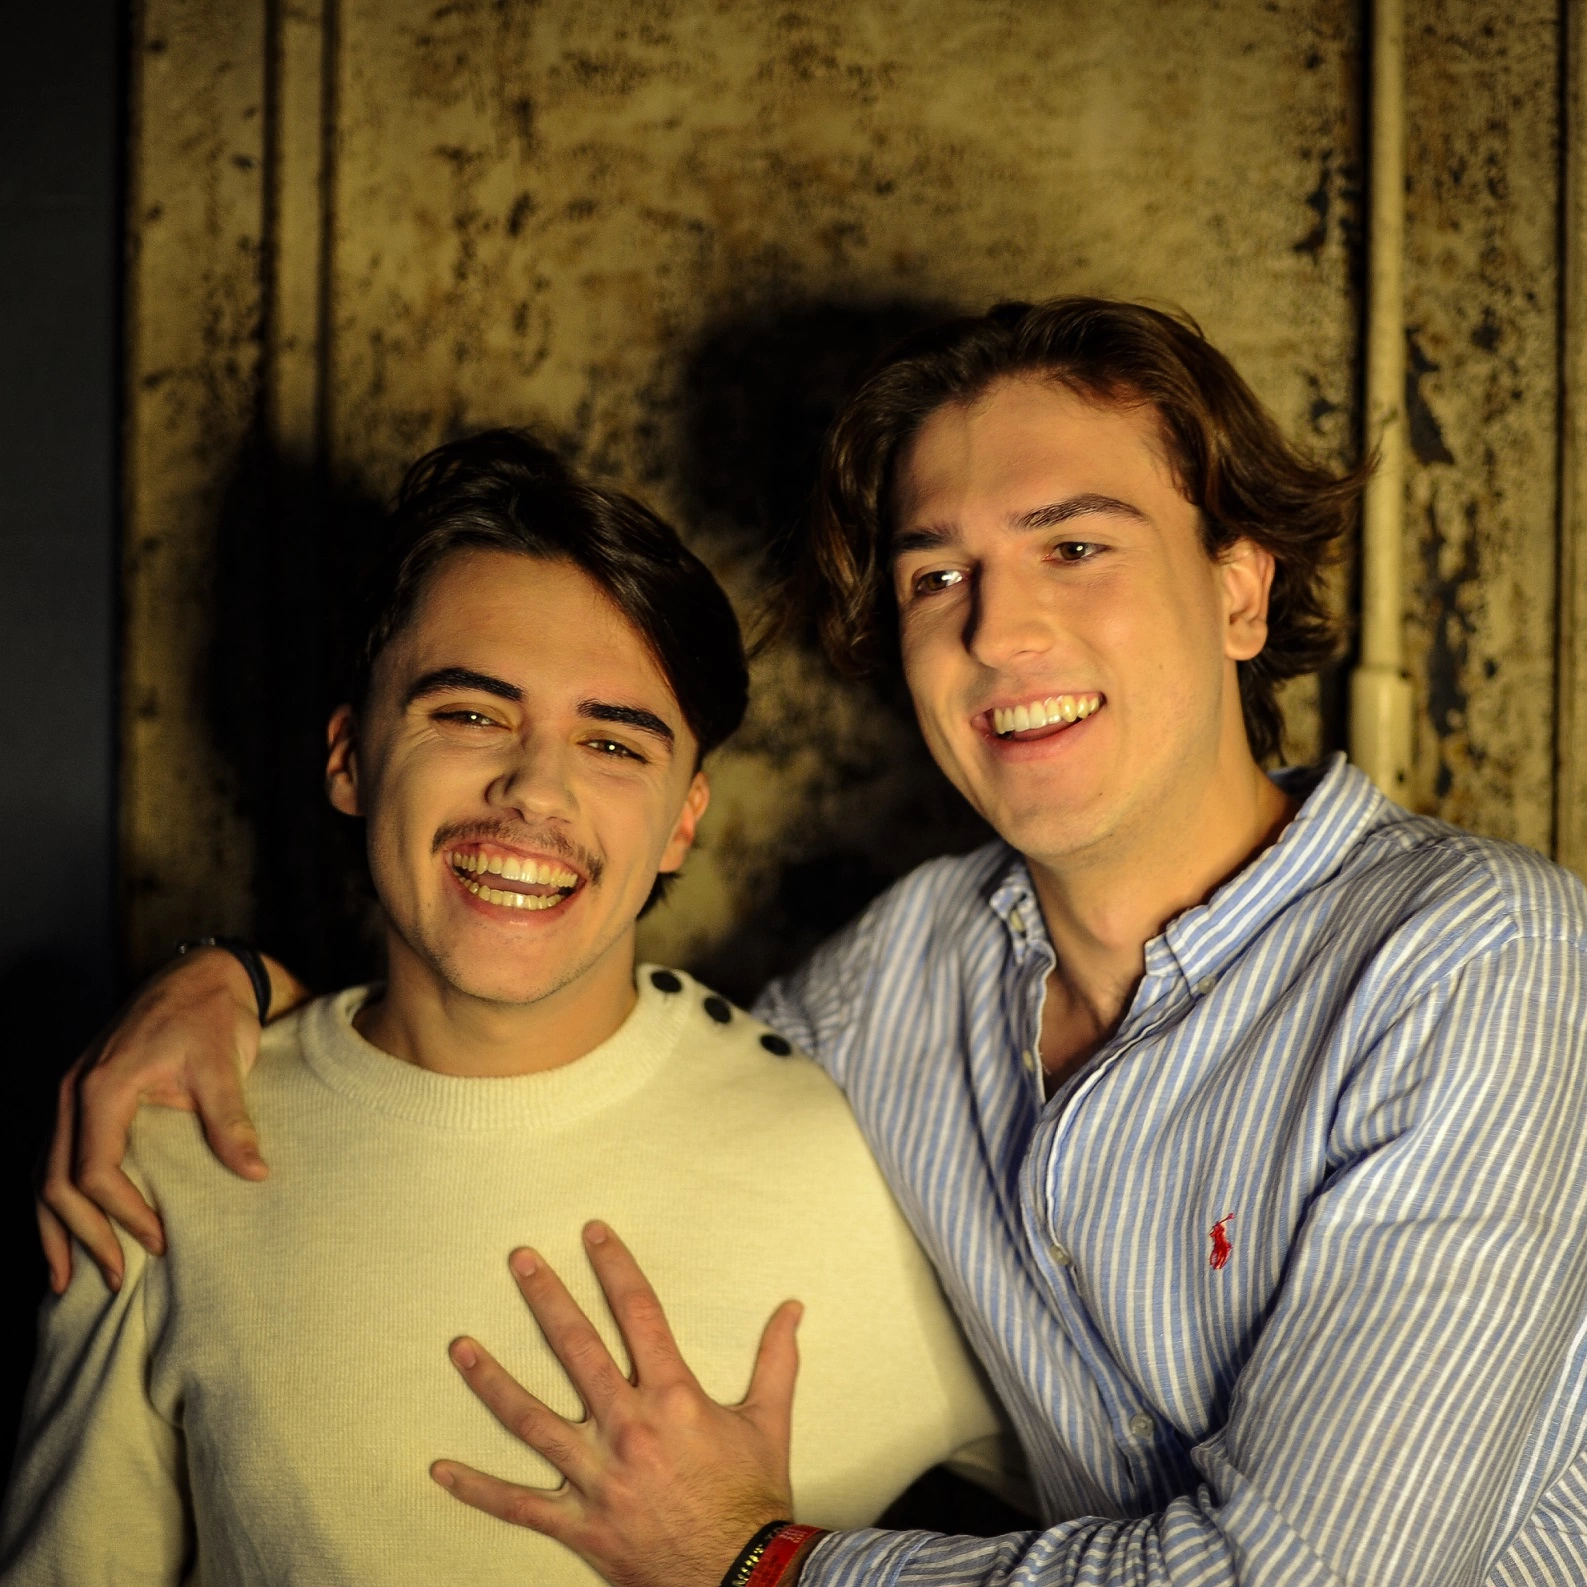 Le pitch : Deux frères découvrent le secret musical de leur famille dans un vieux journal intime. @Campus créatif de l'Université Catholique de Lille